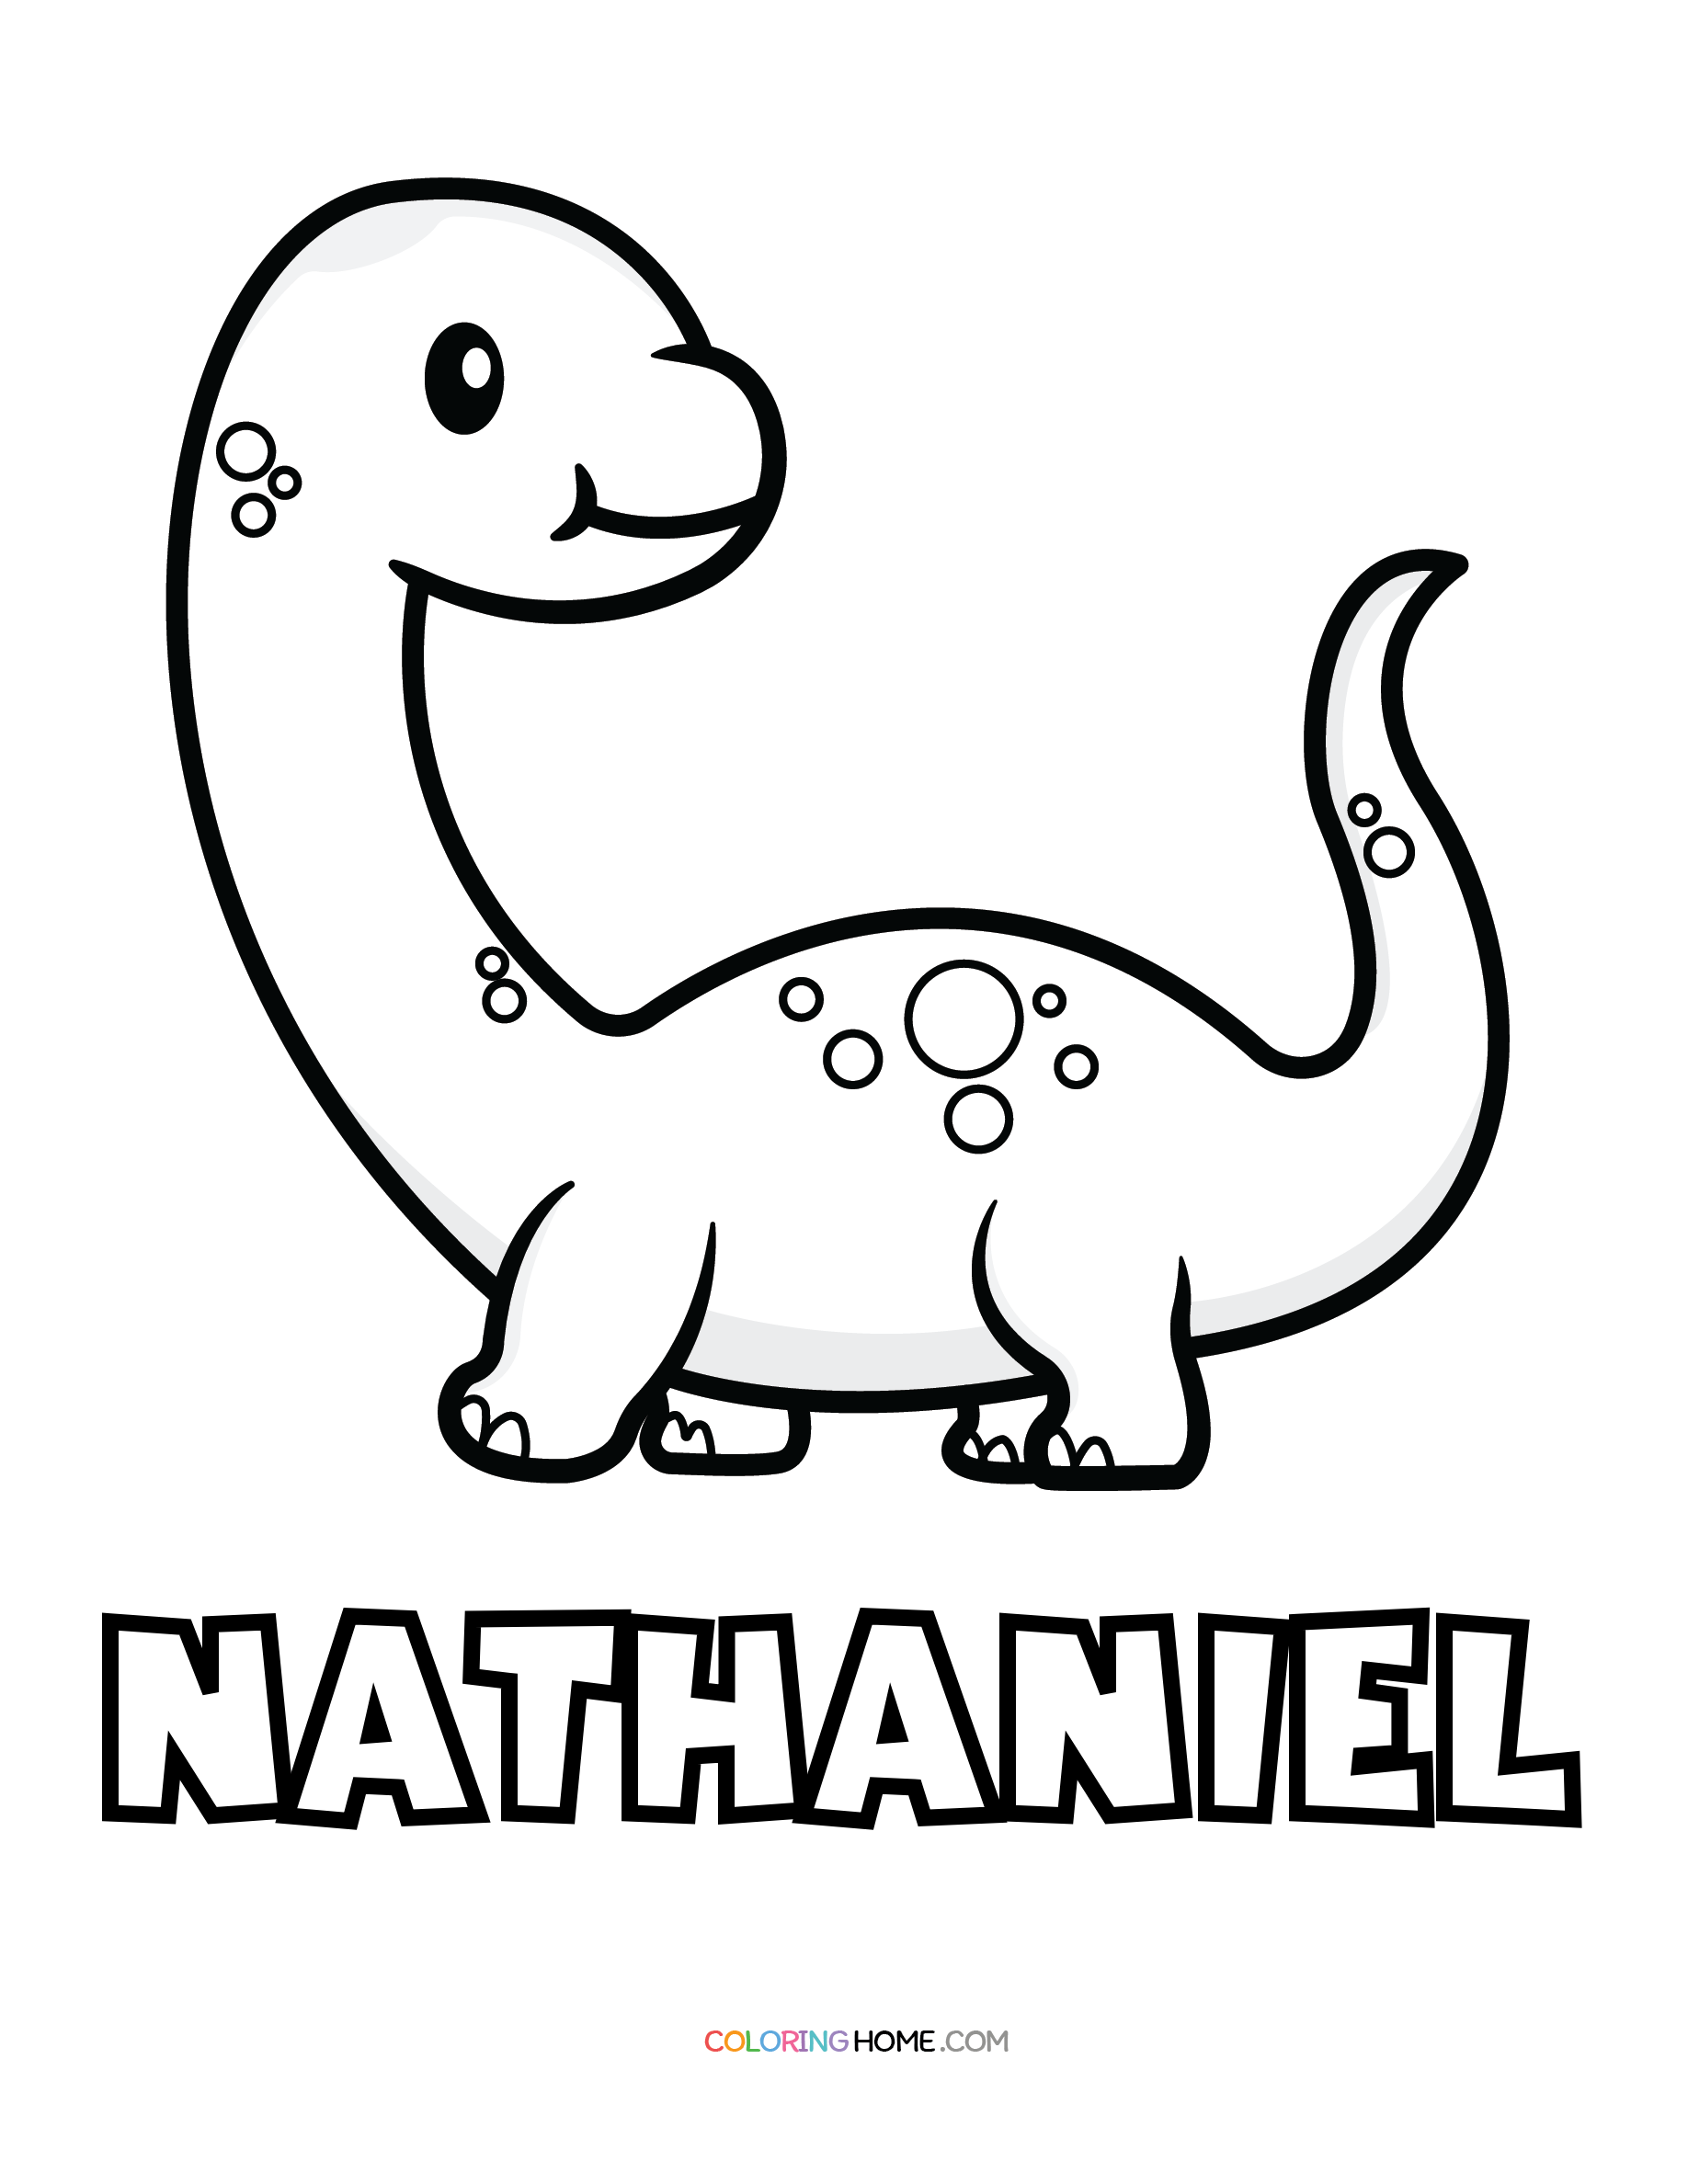 Nathaniel dinosaur coloring page